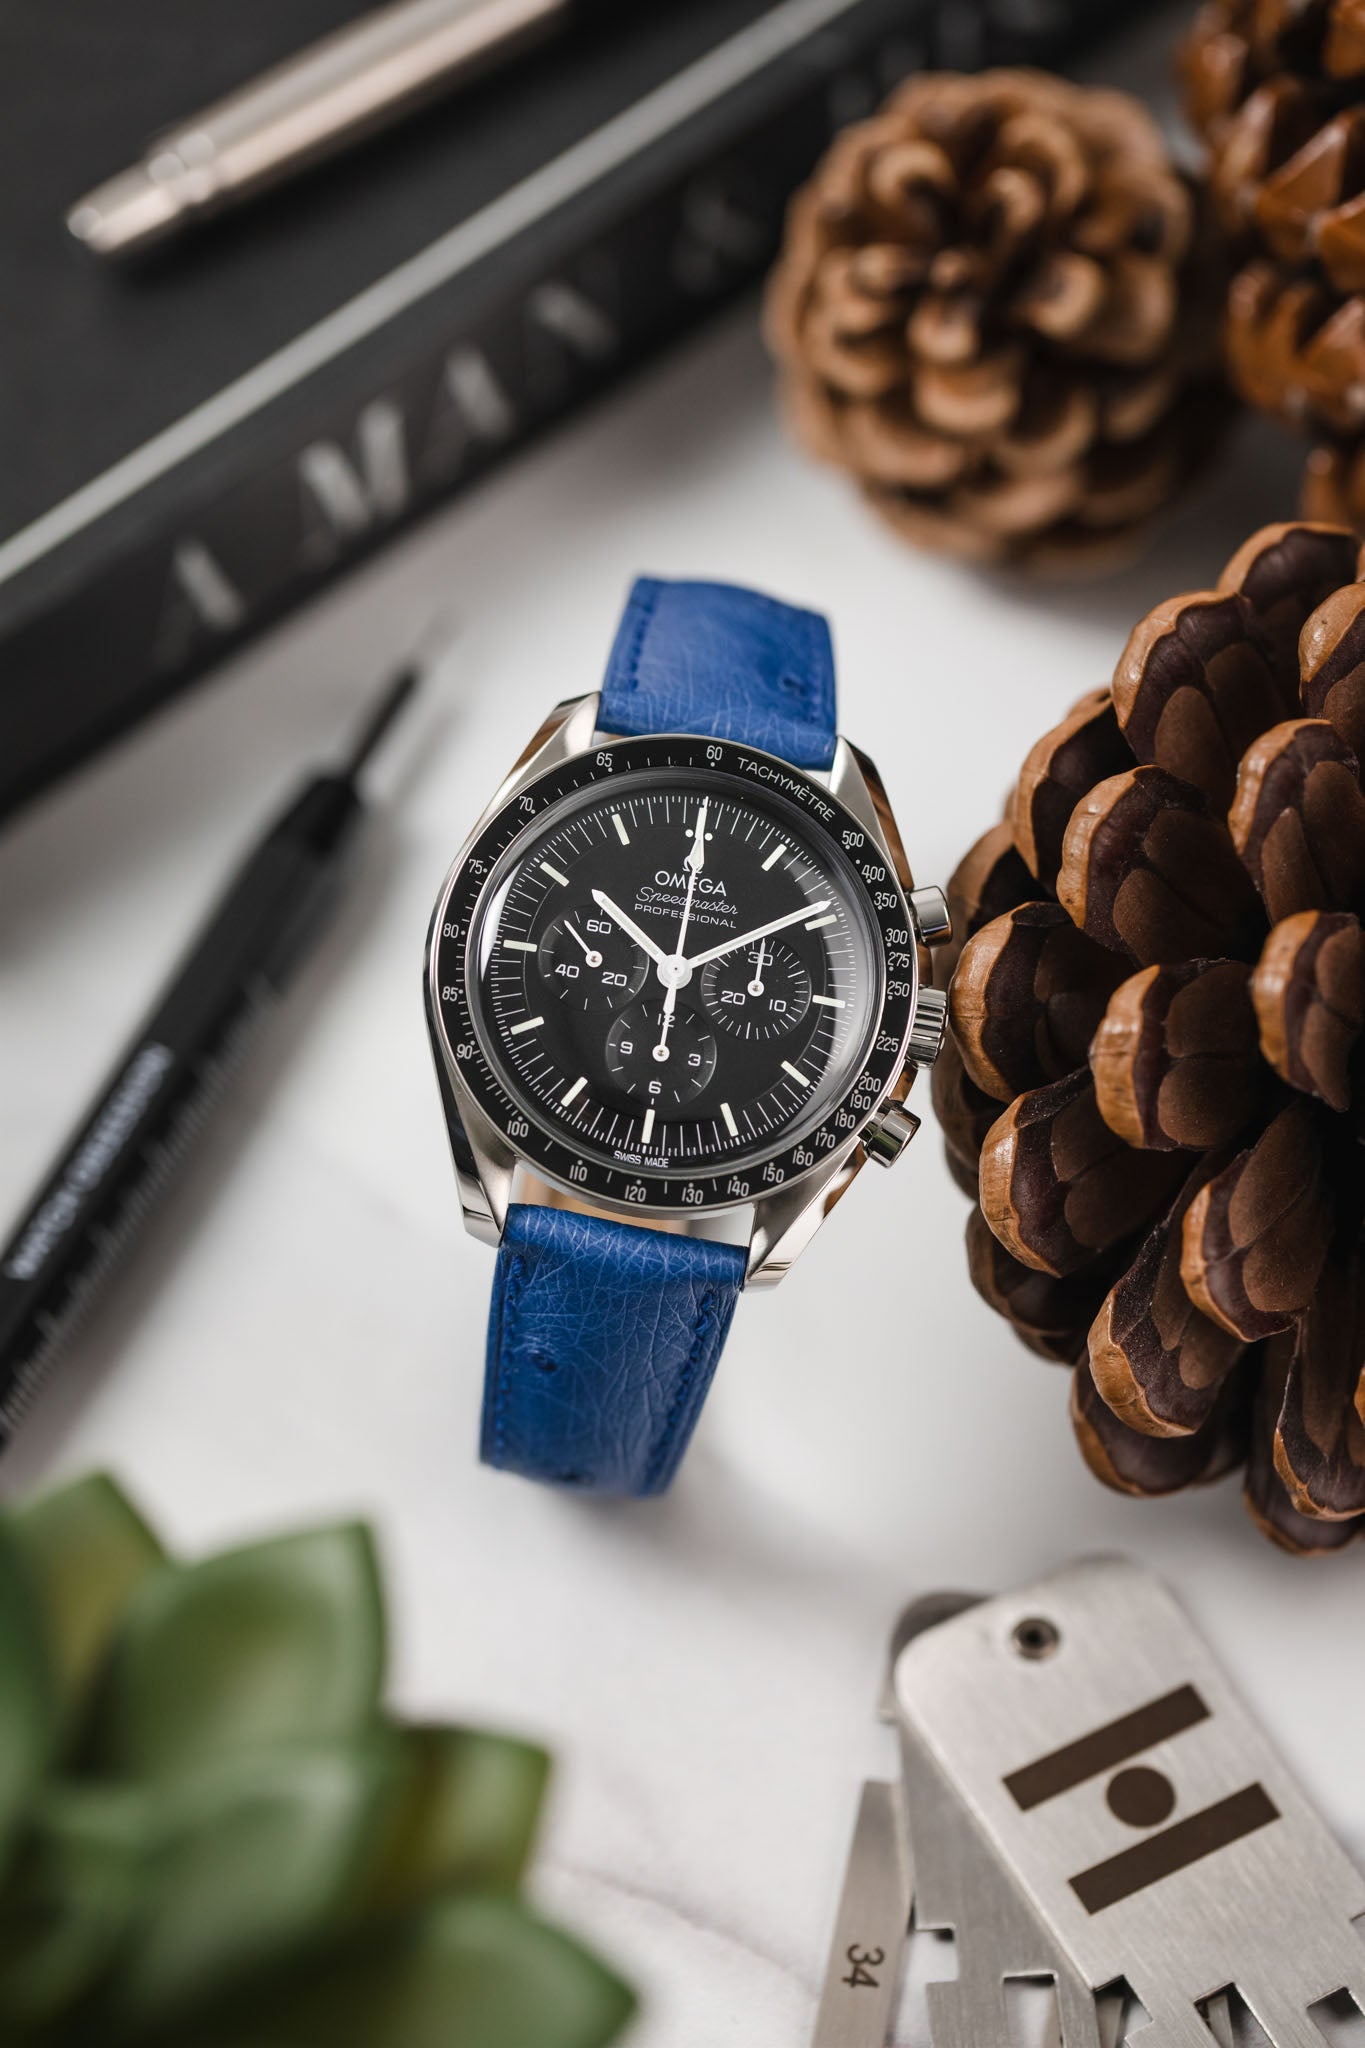 Hirsch MASSAI OSTRICH Leather Watch Strap in ROYAL BLUE